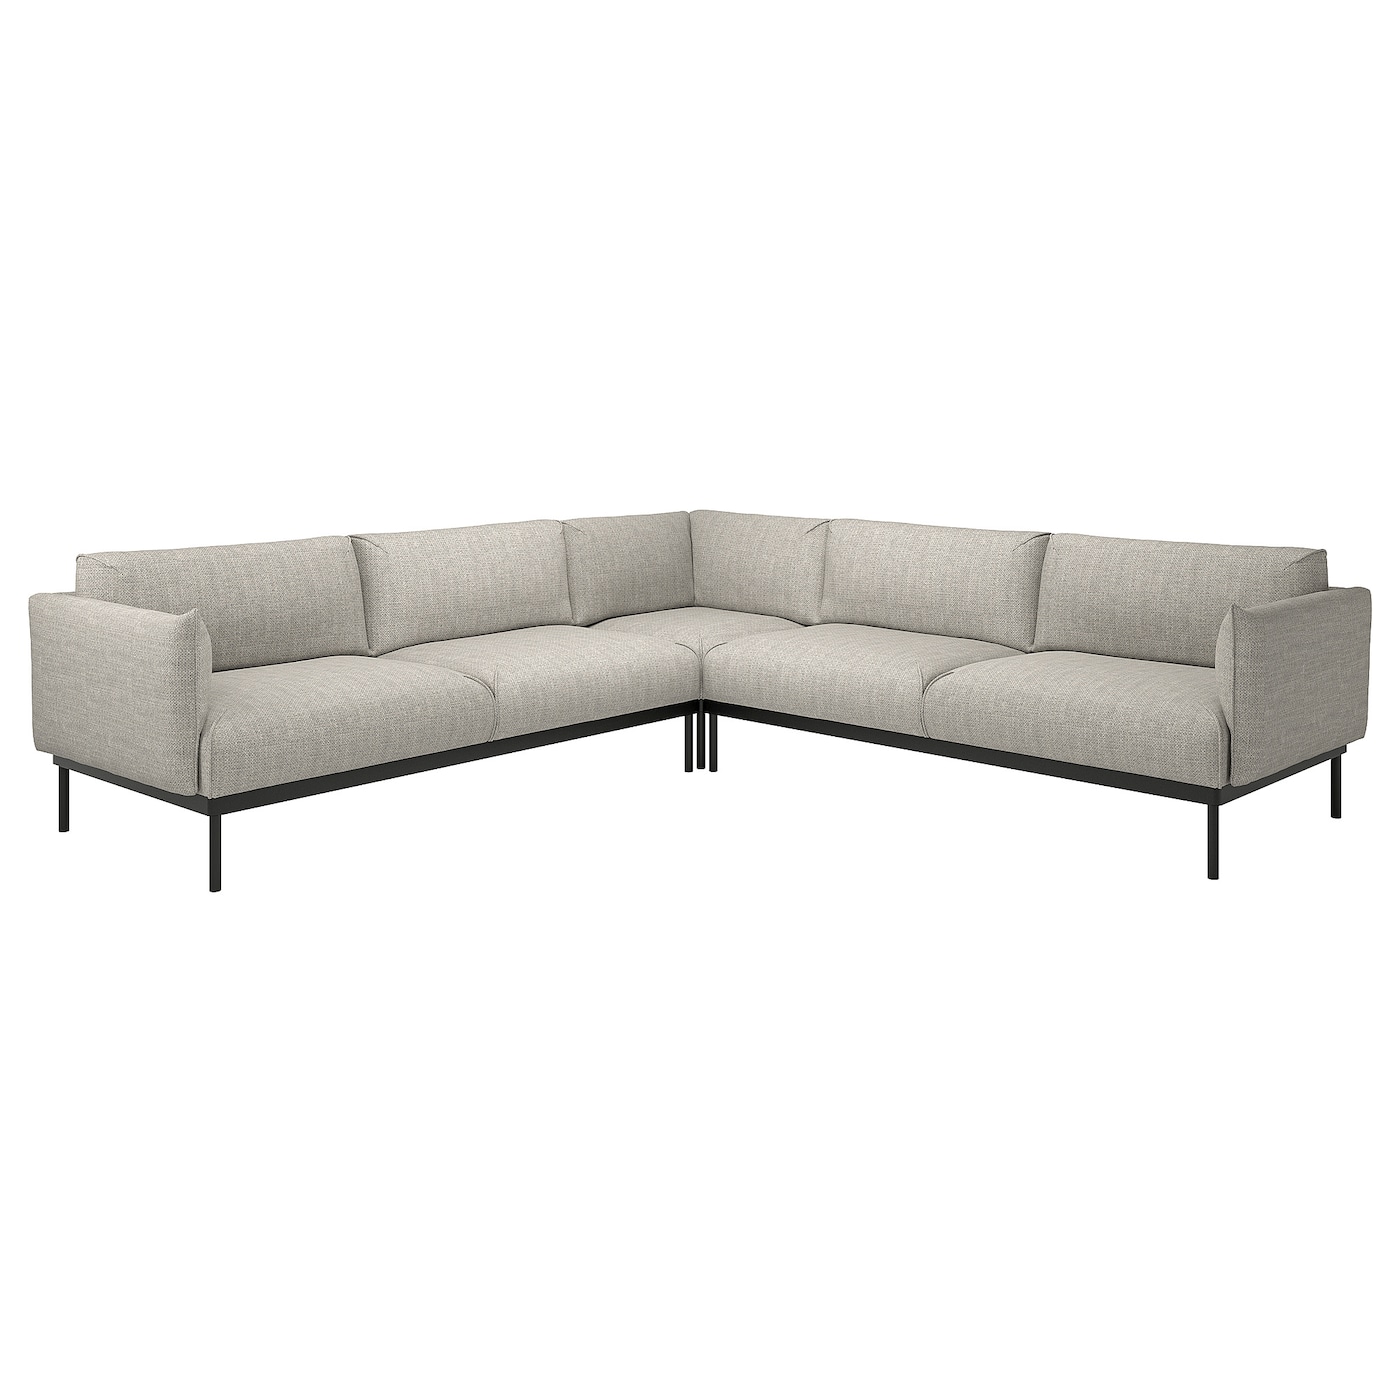 Угловой диван ЭПЛАРИД 4, Лейде светло-серый ÄPPLARYD IKEA